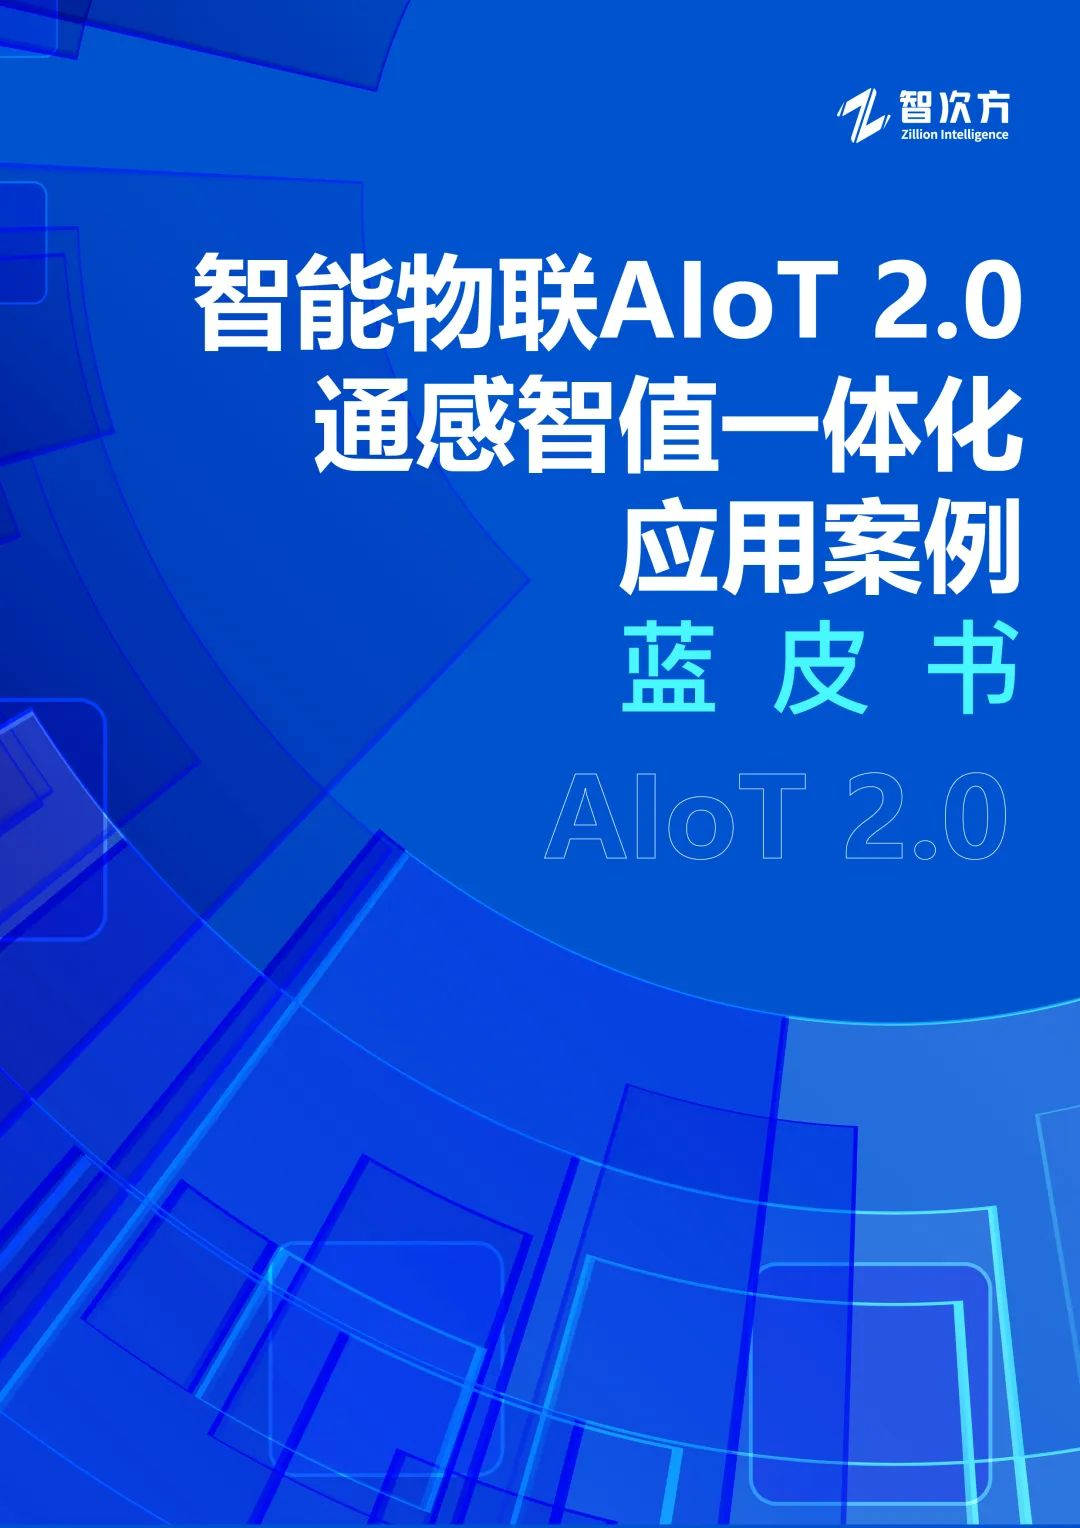 《智能物联AIoT 2.0 通感智值一体化 应用案例蓝皮书》正式发布